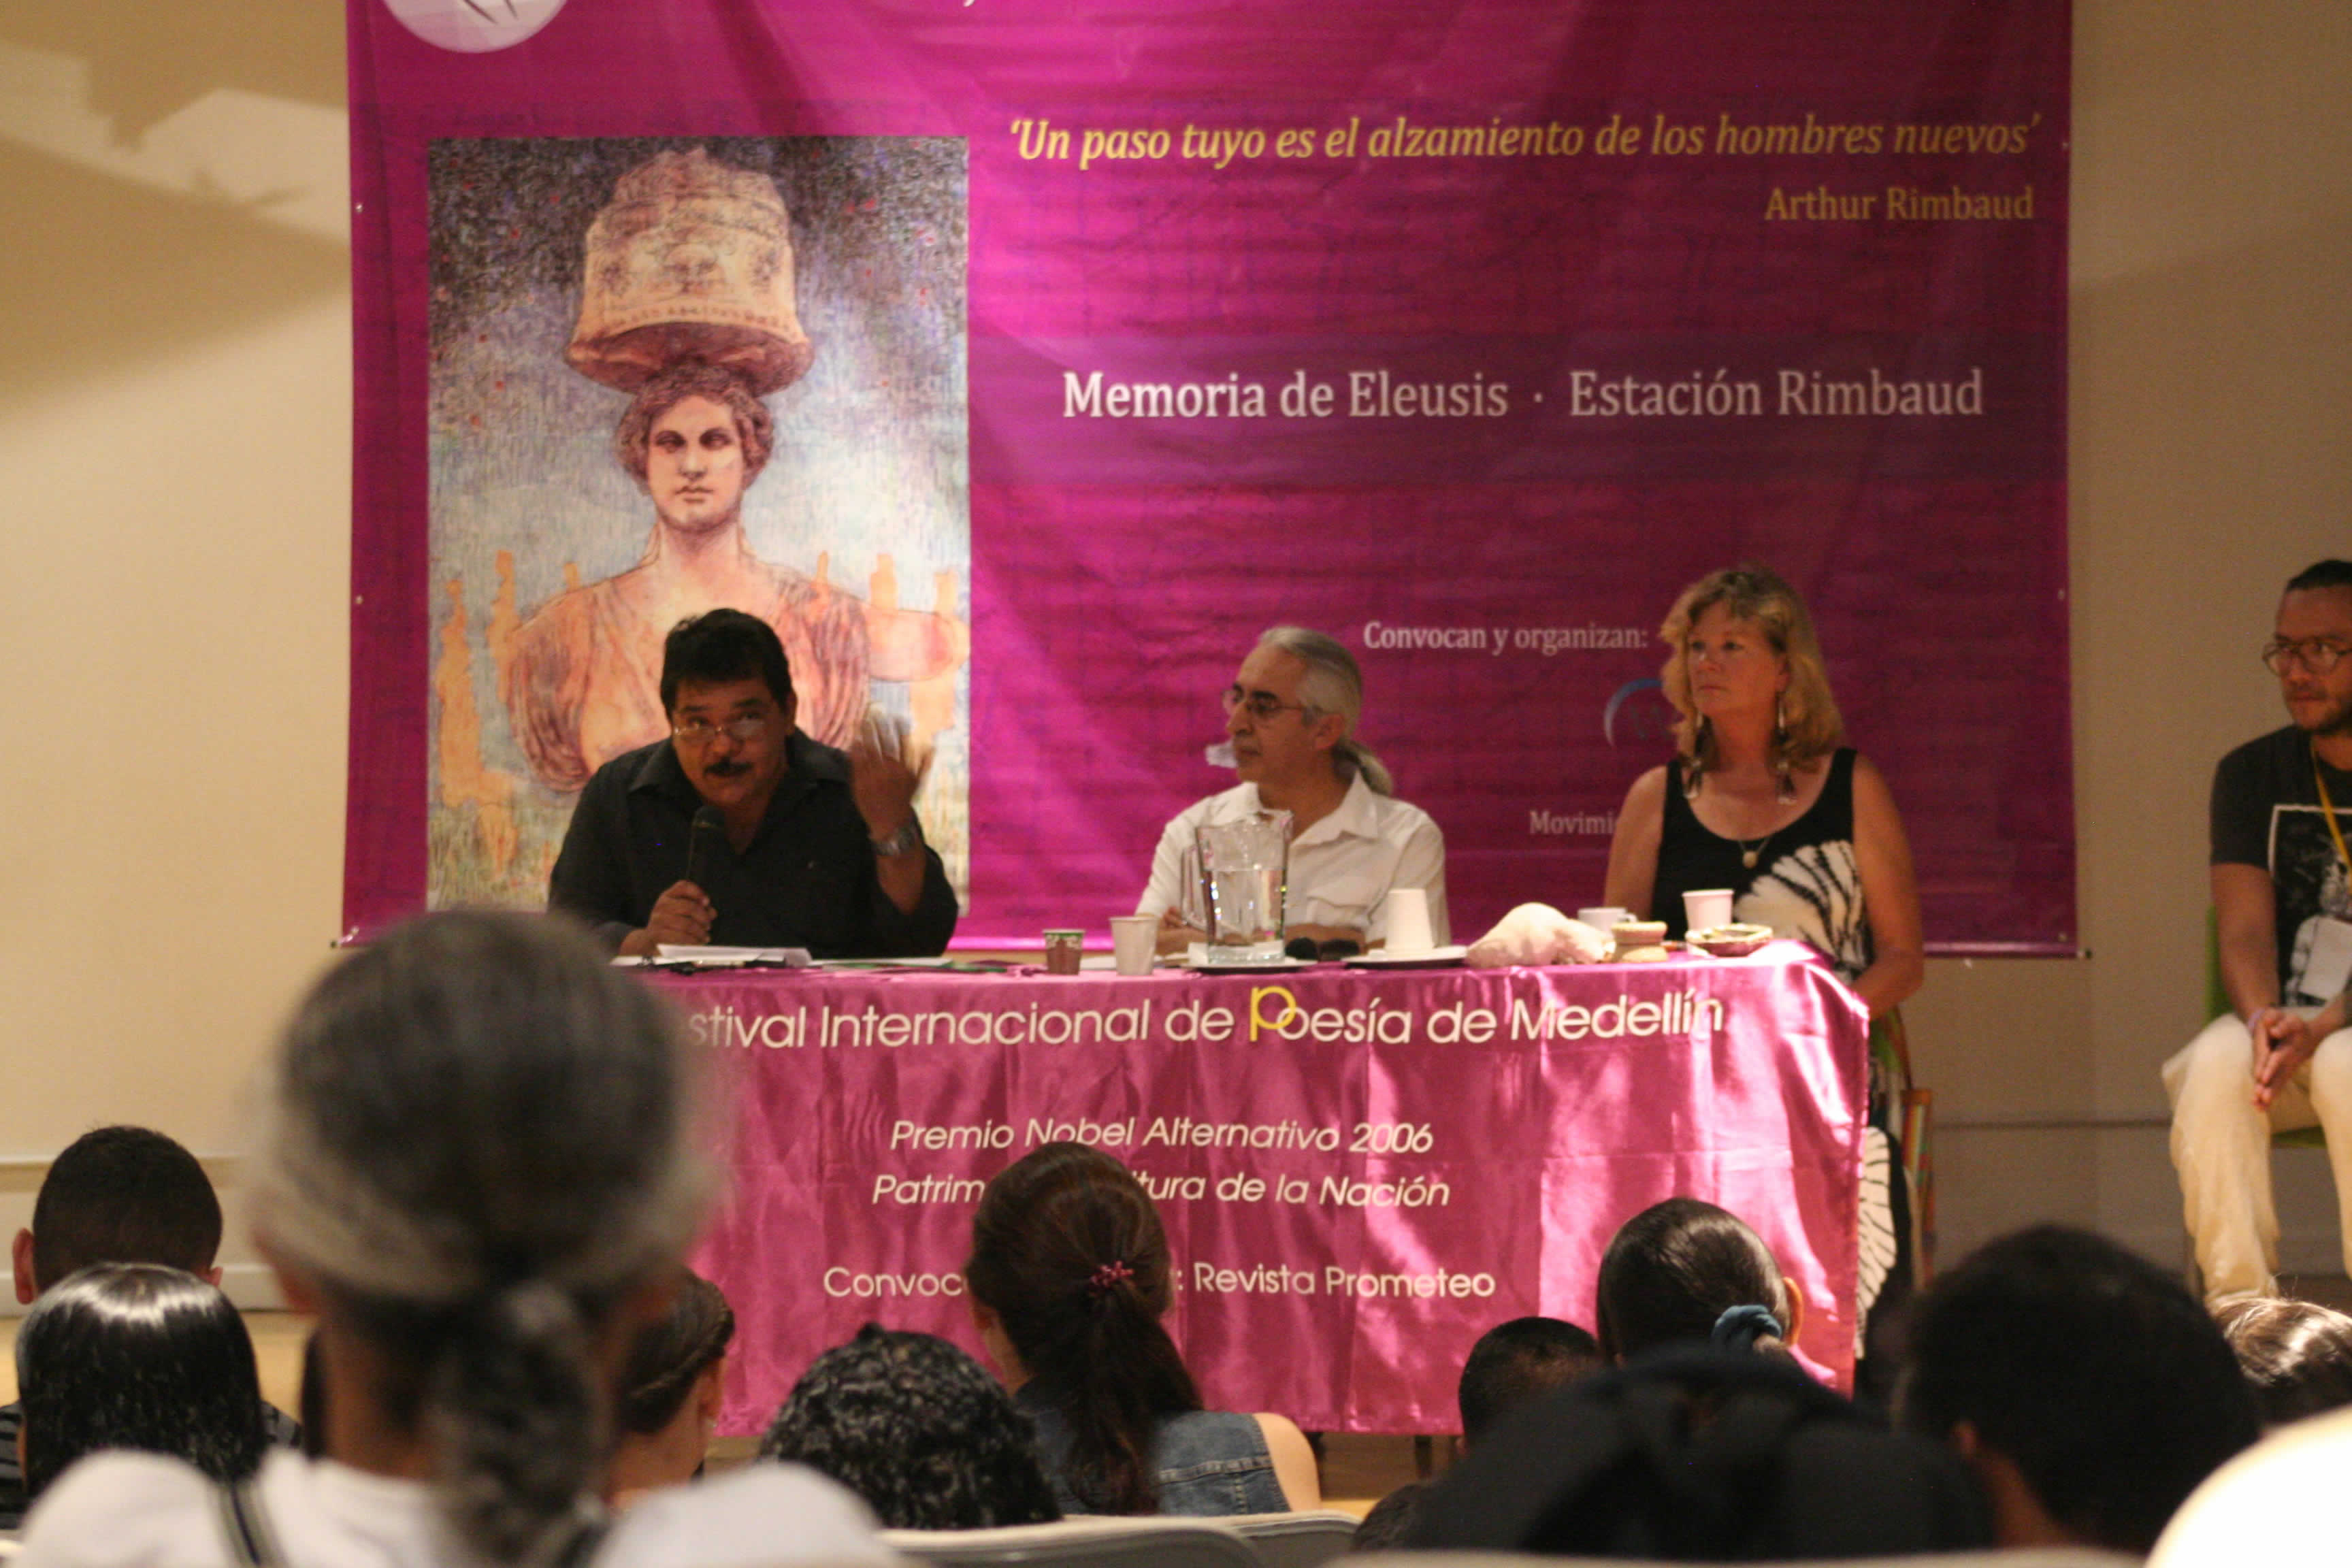  Intervención de Jairo Guzmán, a su lado Ruben Darío Lotero y Meg Carver. © Natalia Rendón